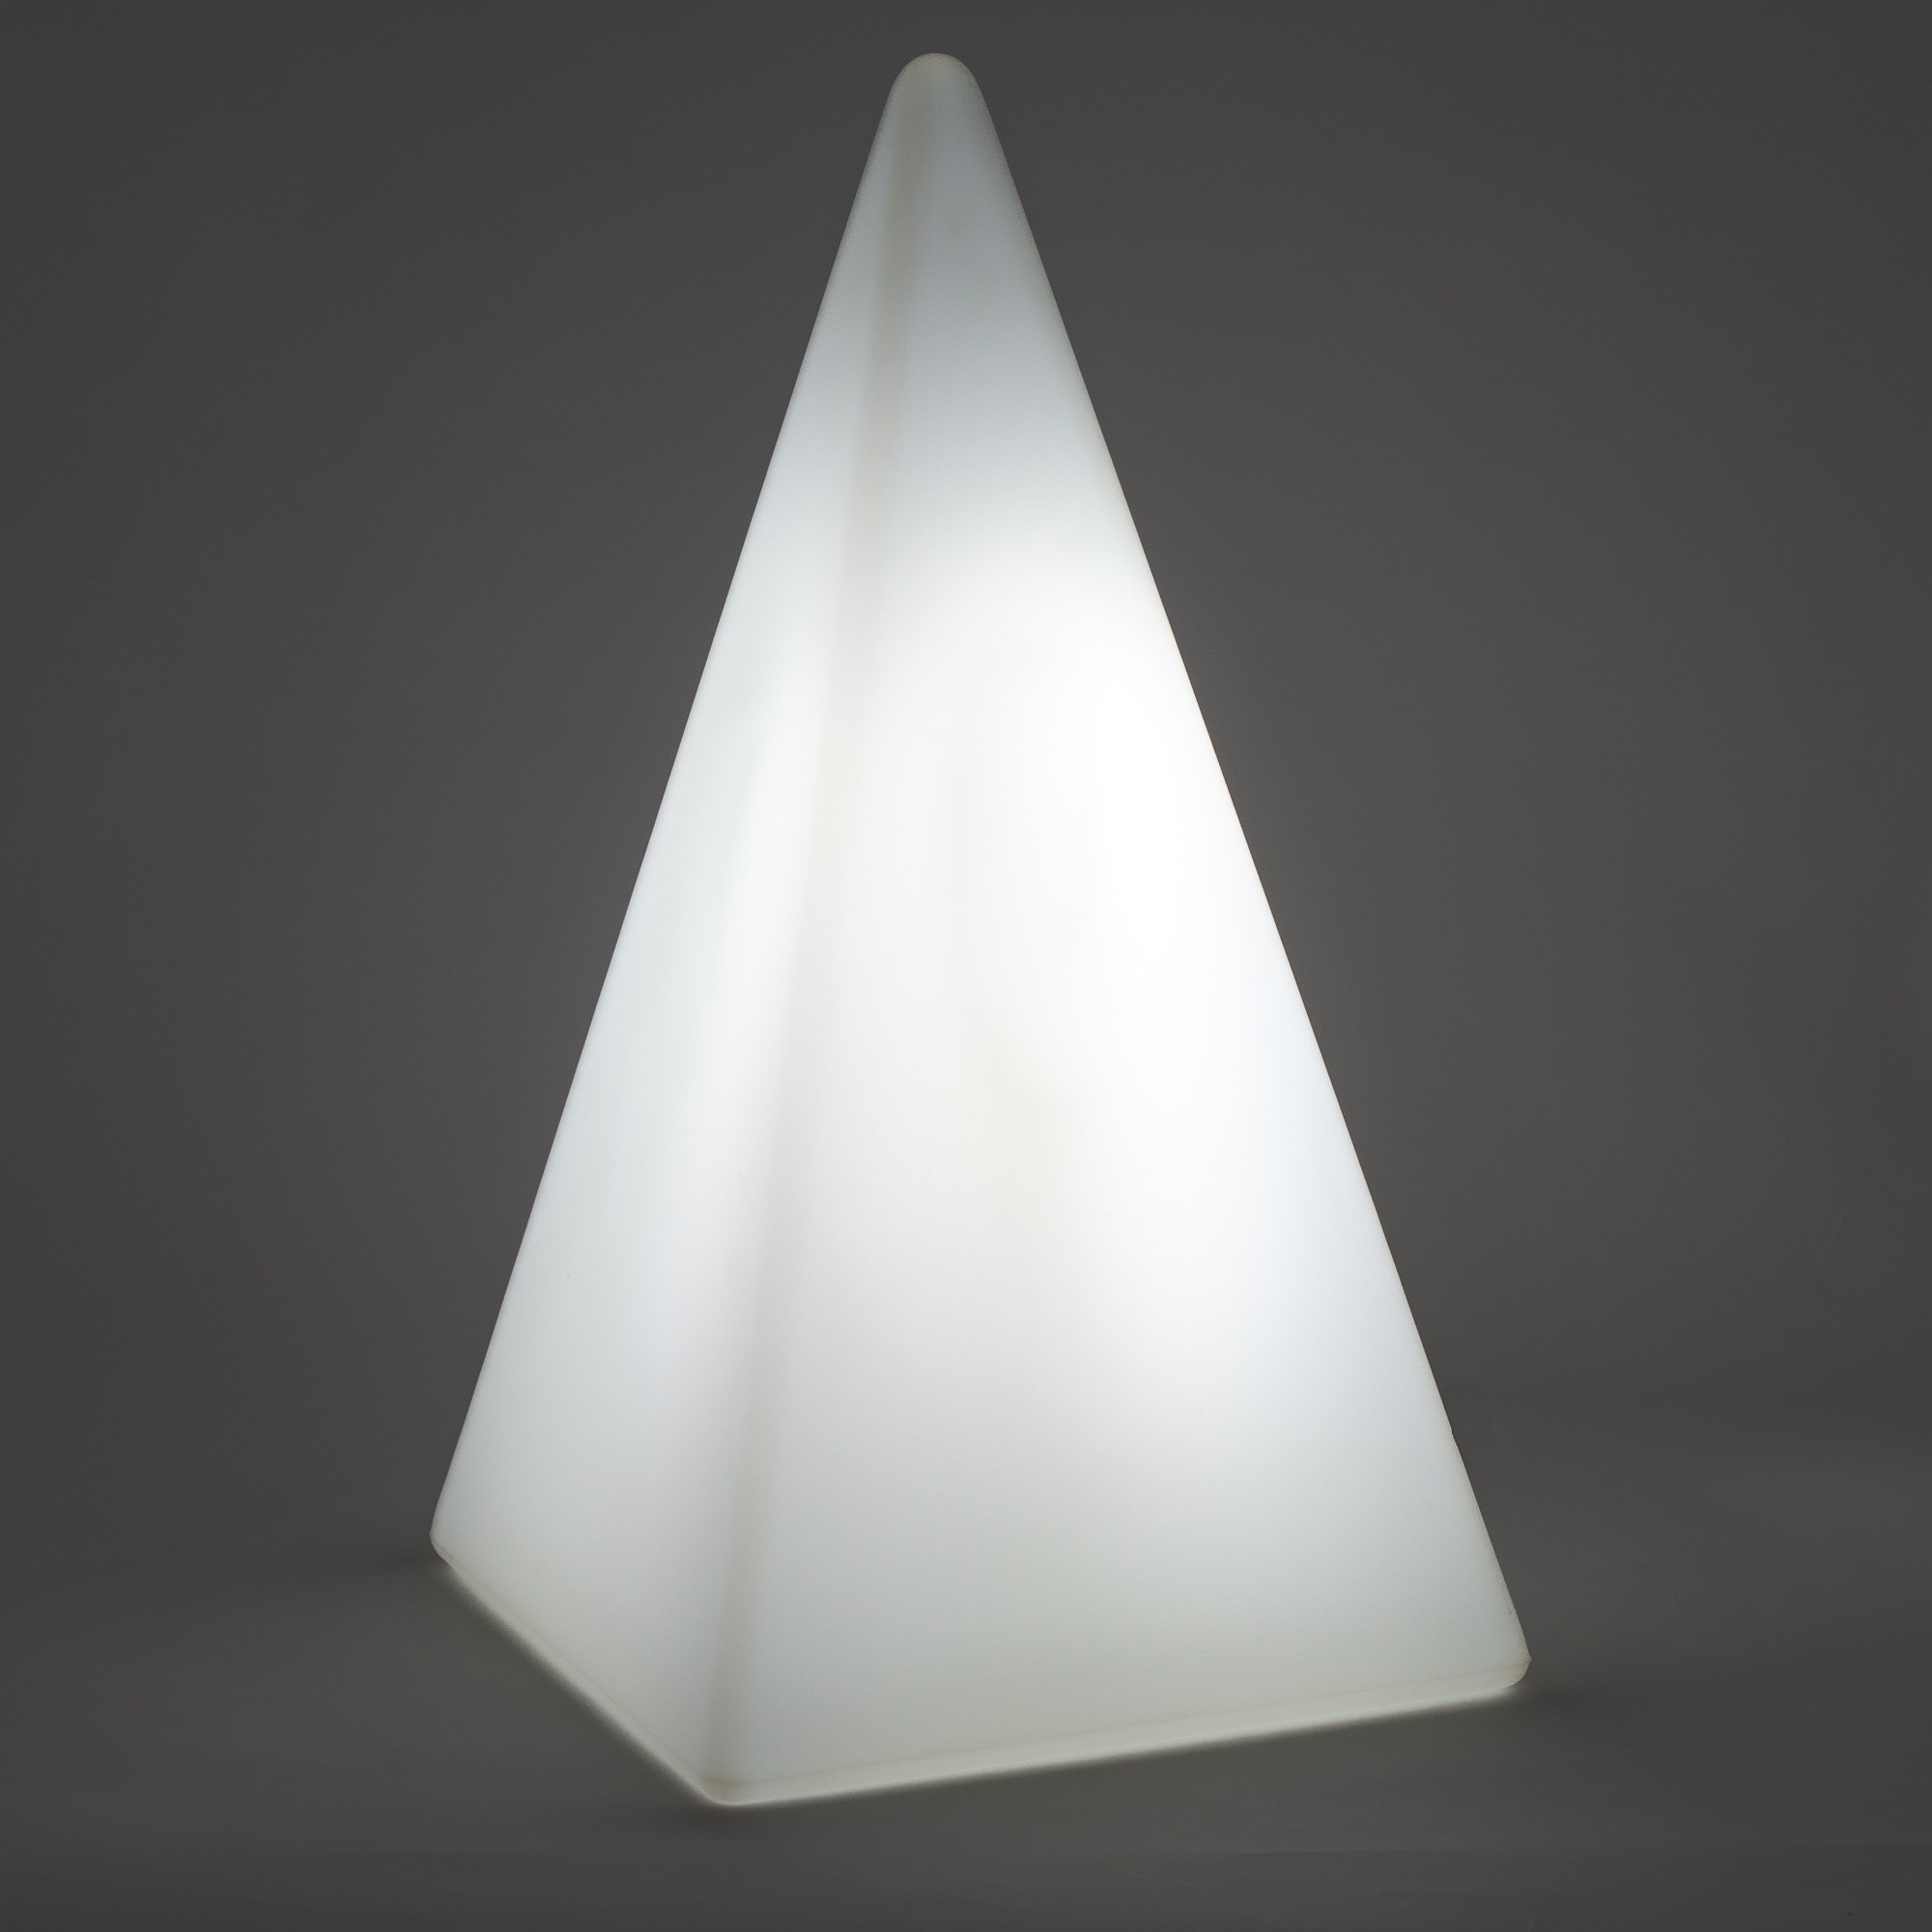 70108 Standleuchte Pyramide 36 cm der Firma EPSTEIN Design Leuchten